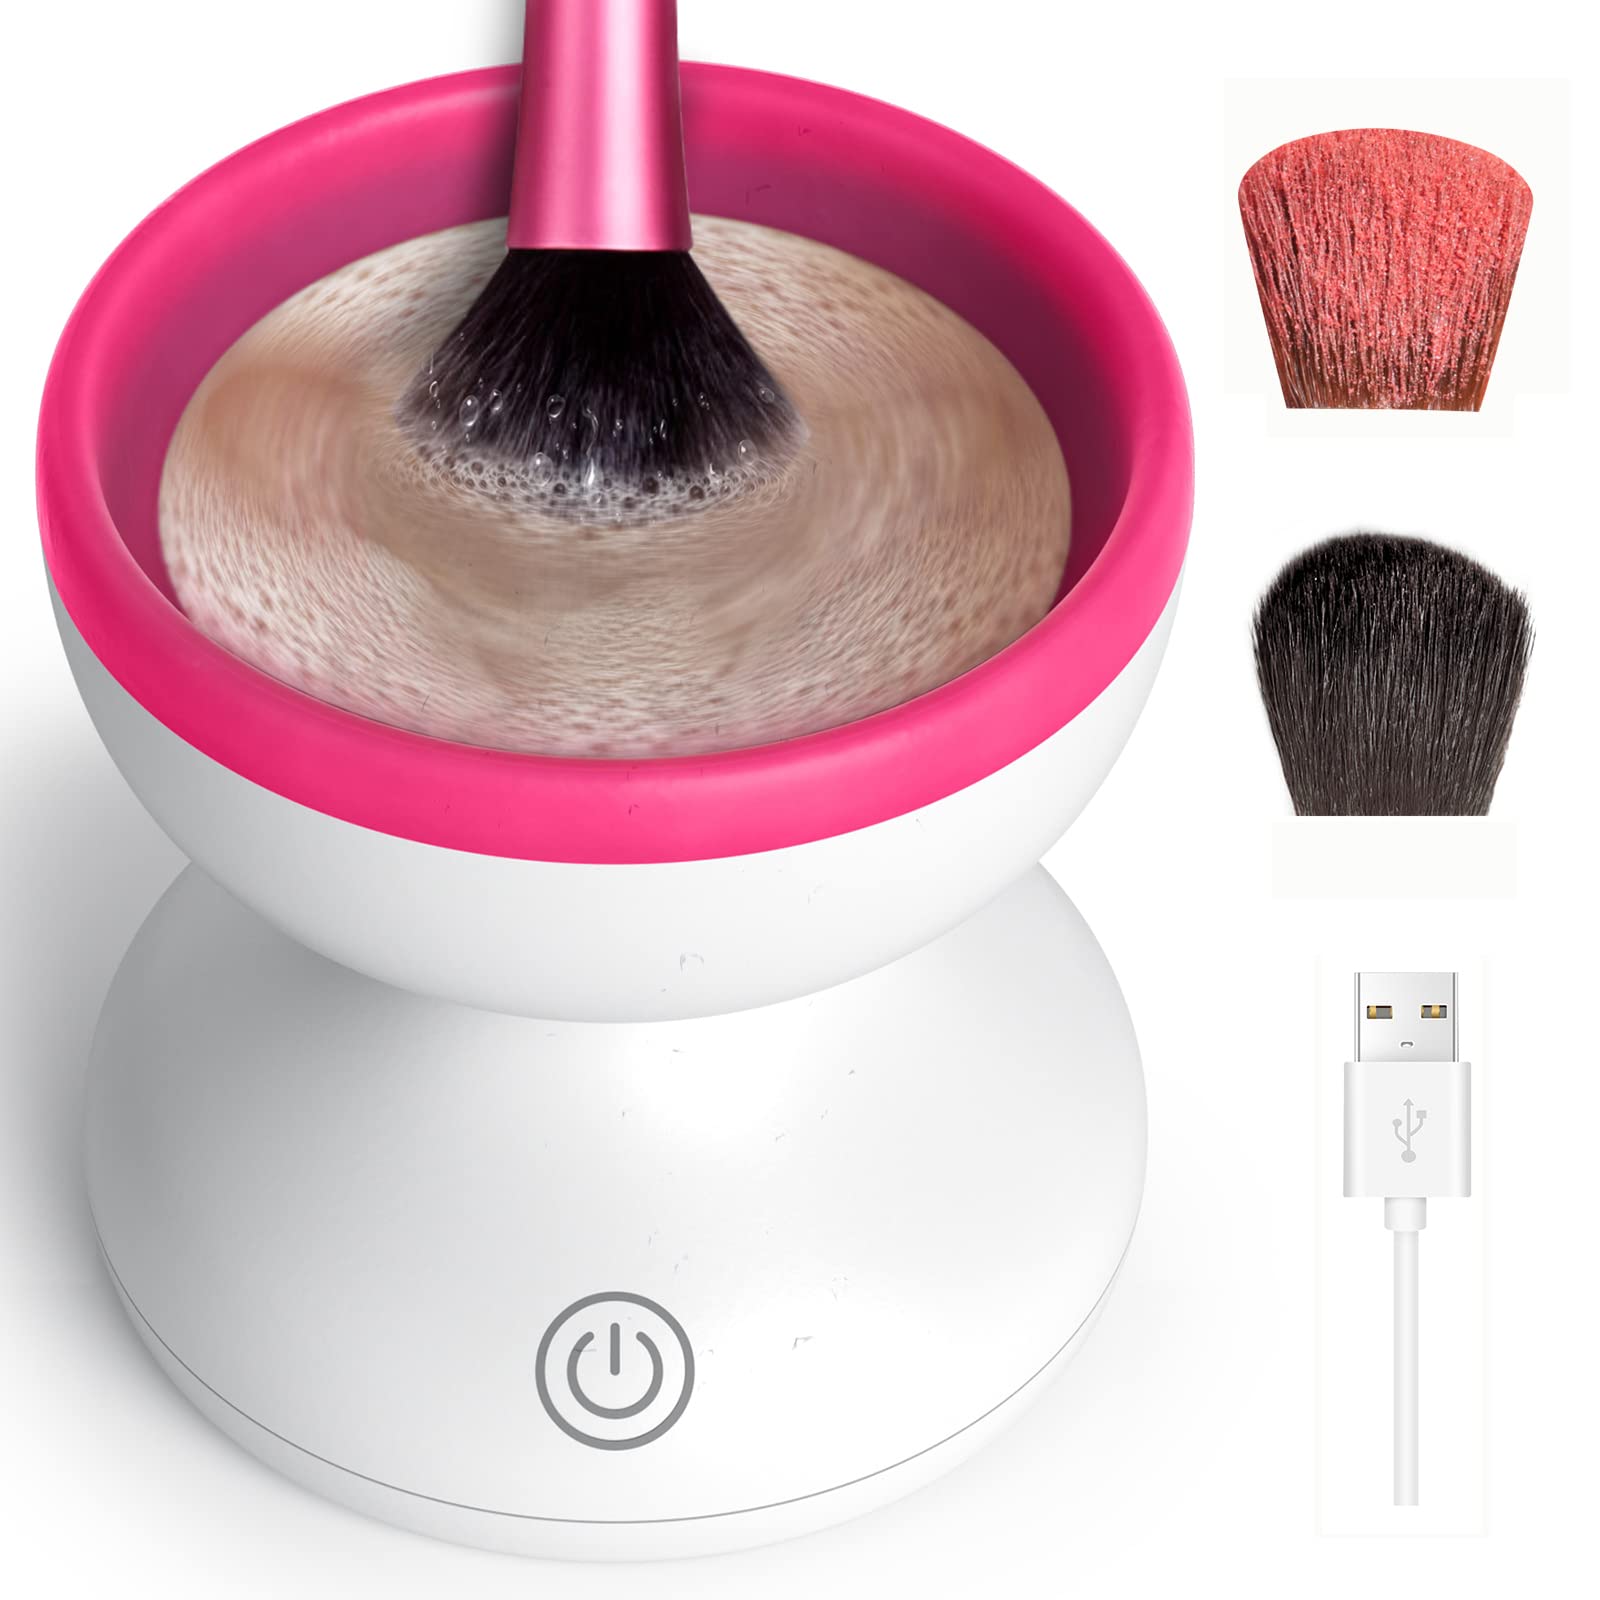 Alyfini Makeup Brush Cleaner Machine - Electric Makeup Brush